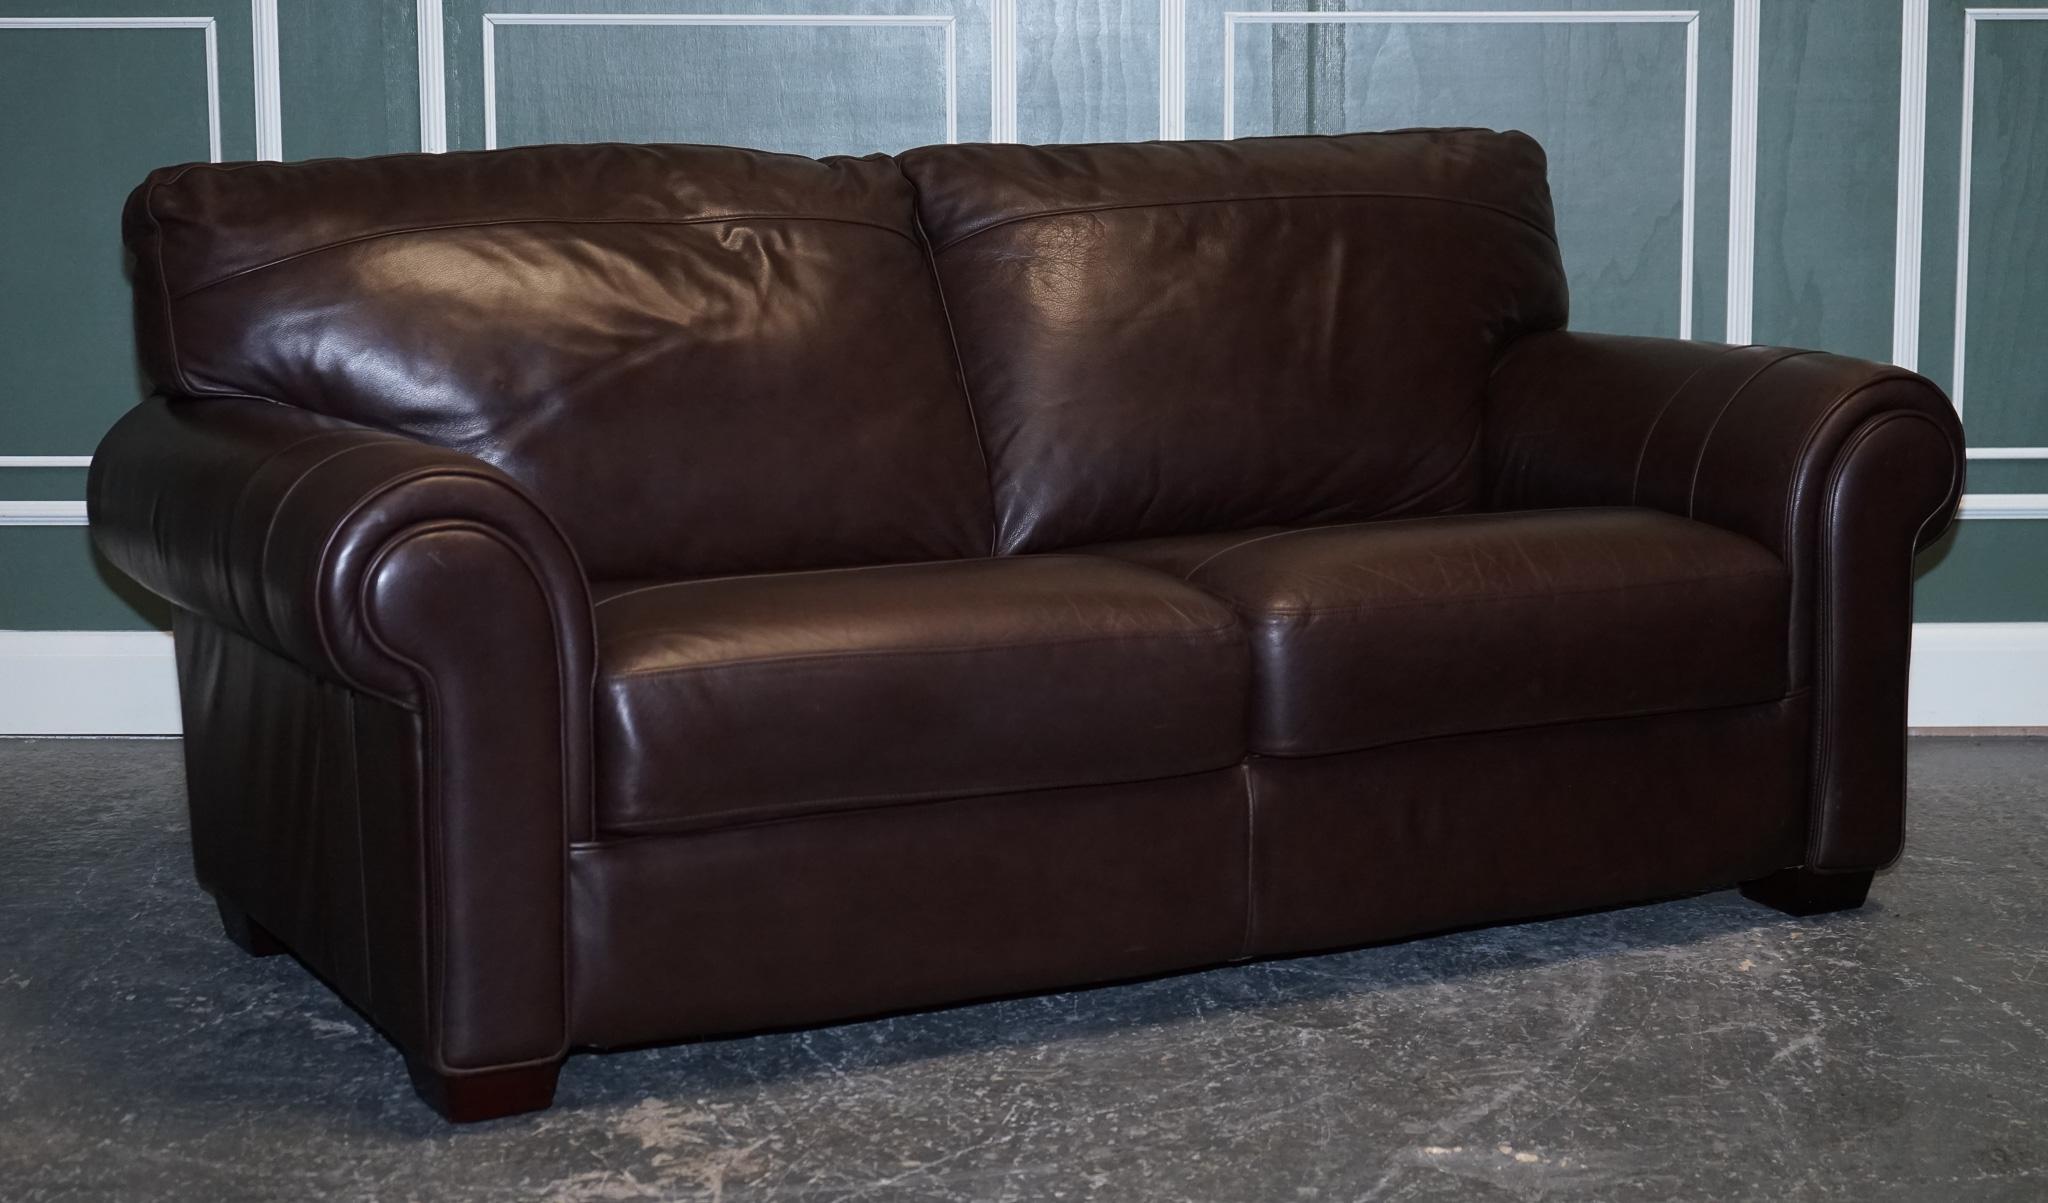 Nous sommes ravis de vous présenter ce superbe et confortable canapé trois à quatre places en cuir brun.
Un bon canapé honnête et confortable pouvant accueillir 3 à 4 personnes.
Les coussins sont également fixés au canapé.

Ils sont garnis de